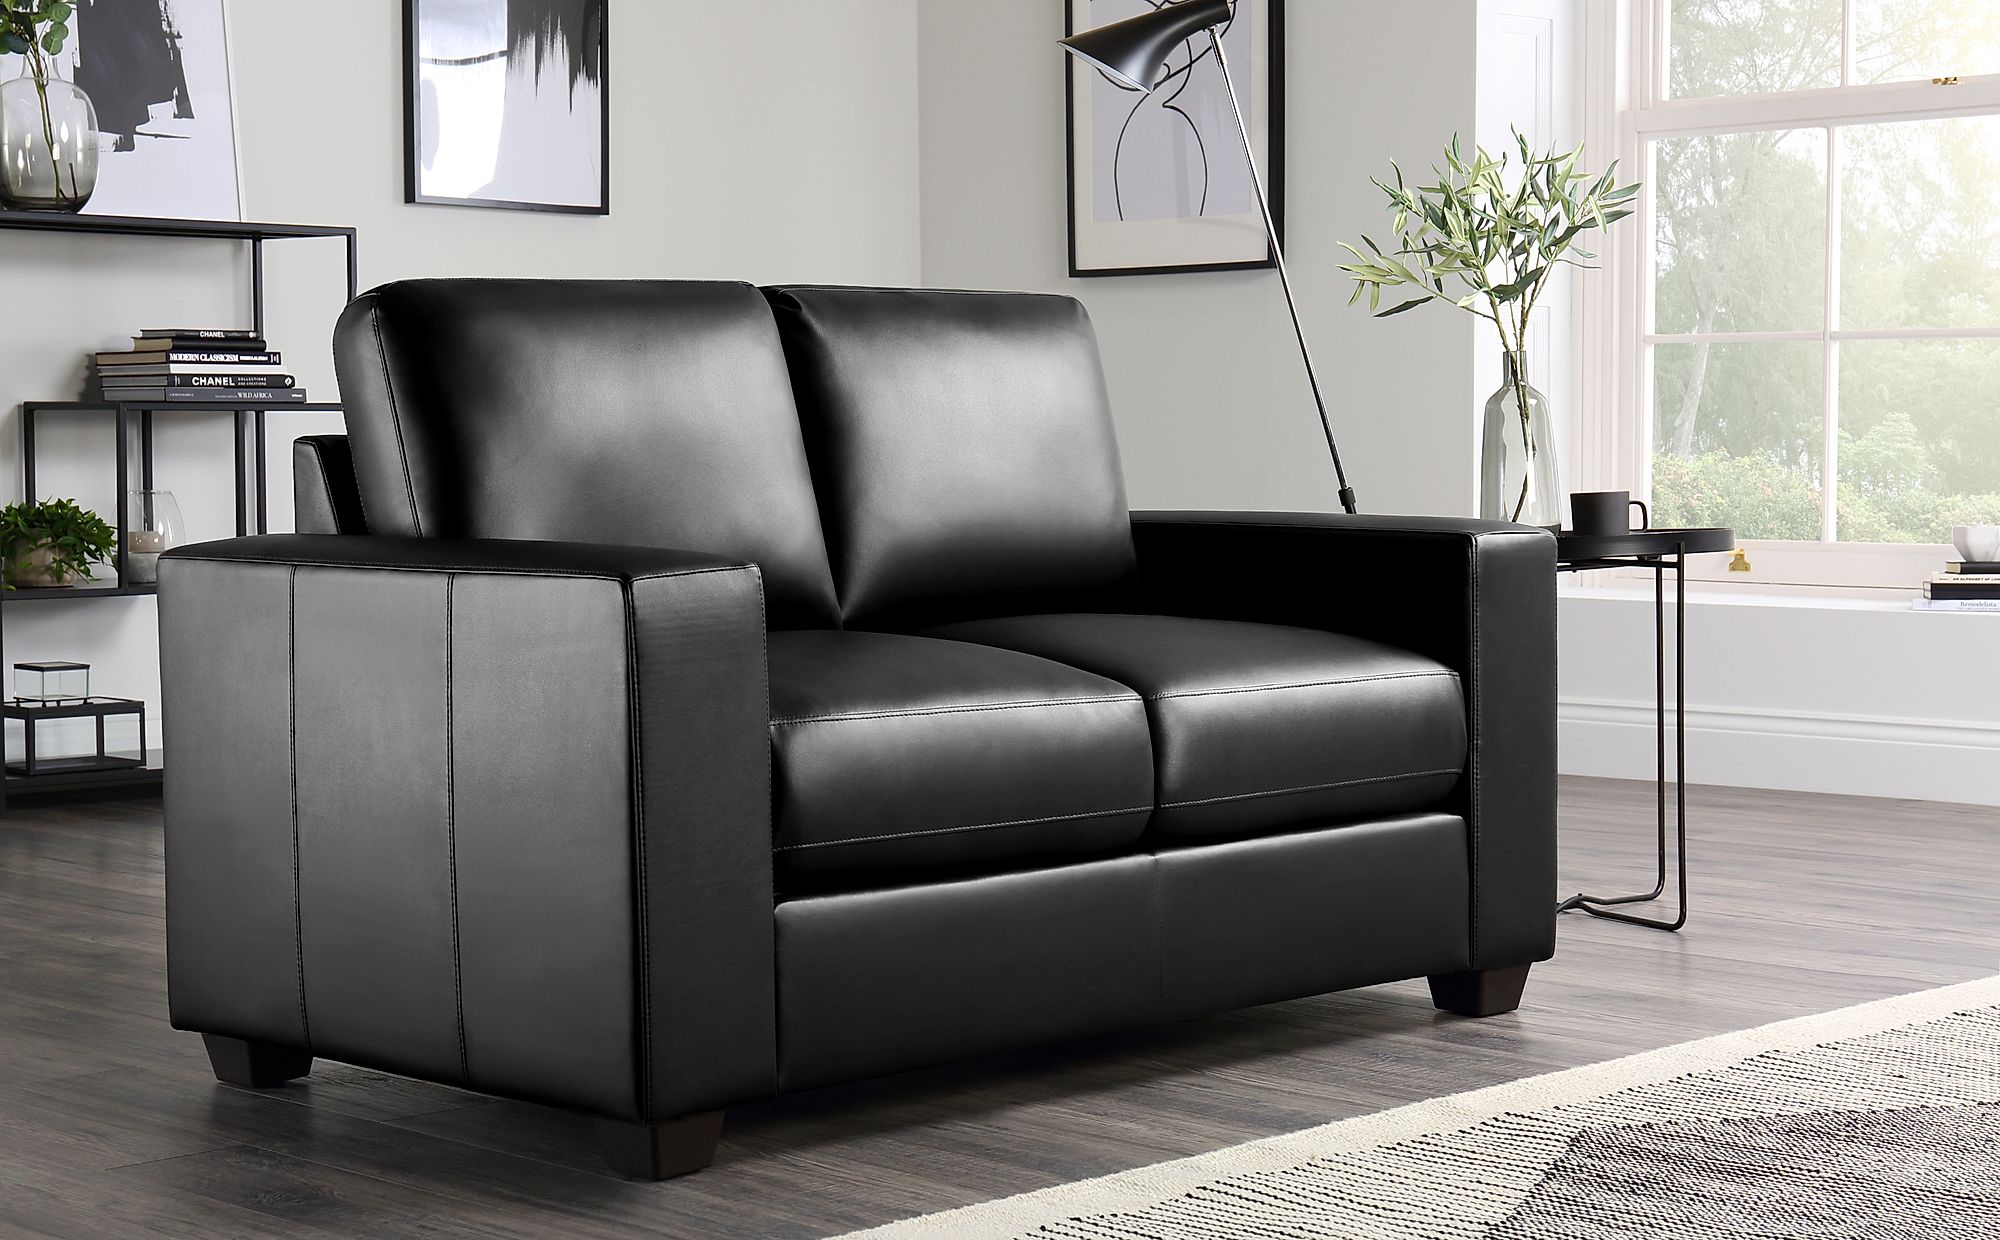 2 seater leather sofa dubai